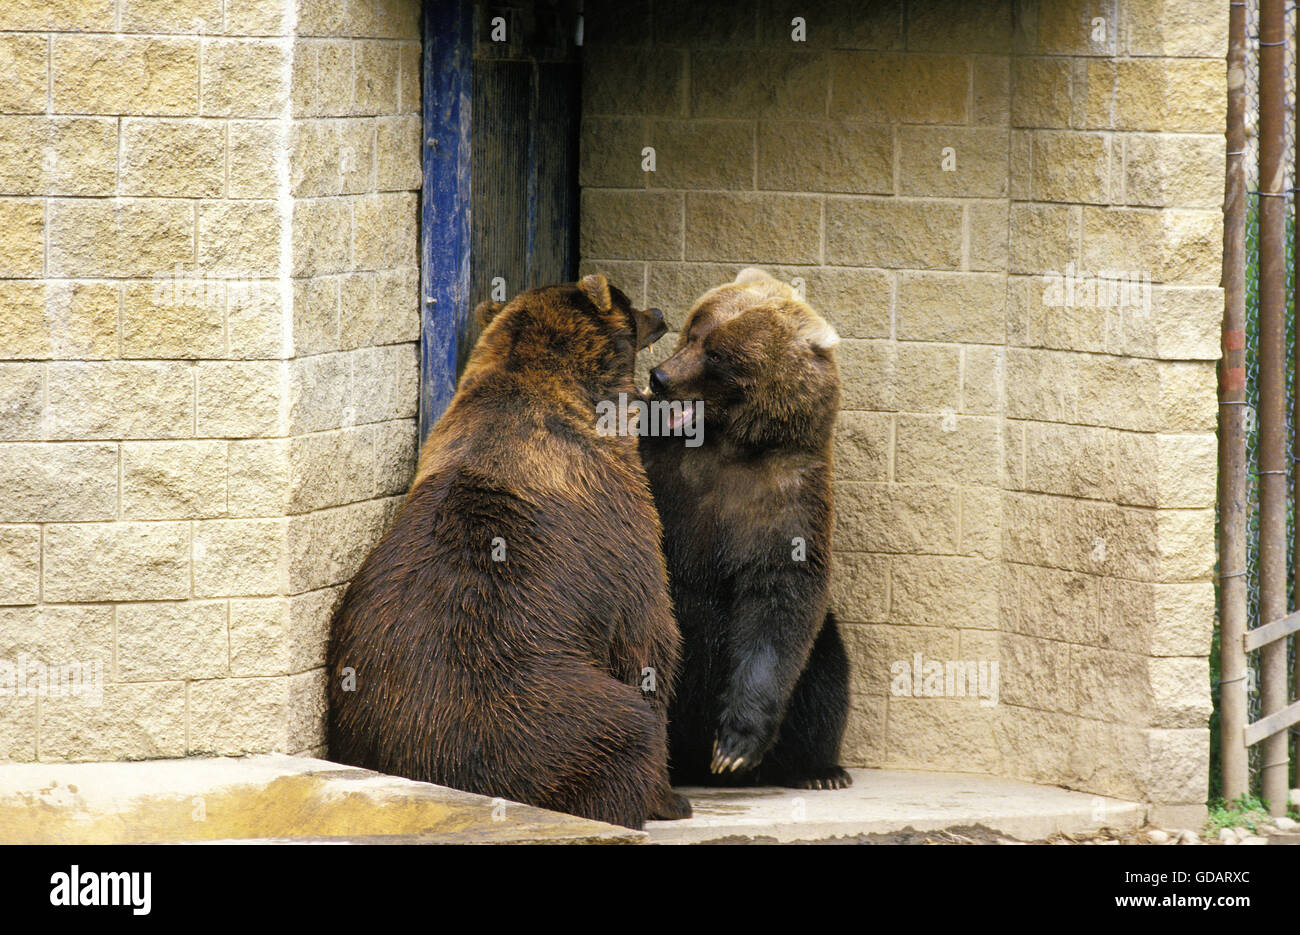 Brown Bear, ursus arctos, at the Zoo Stock Photo